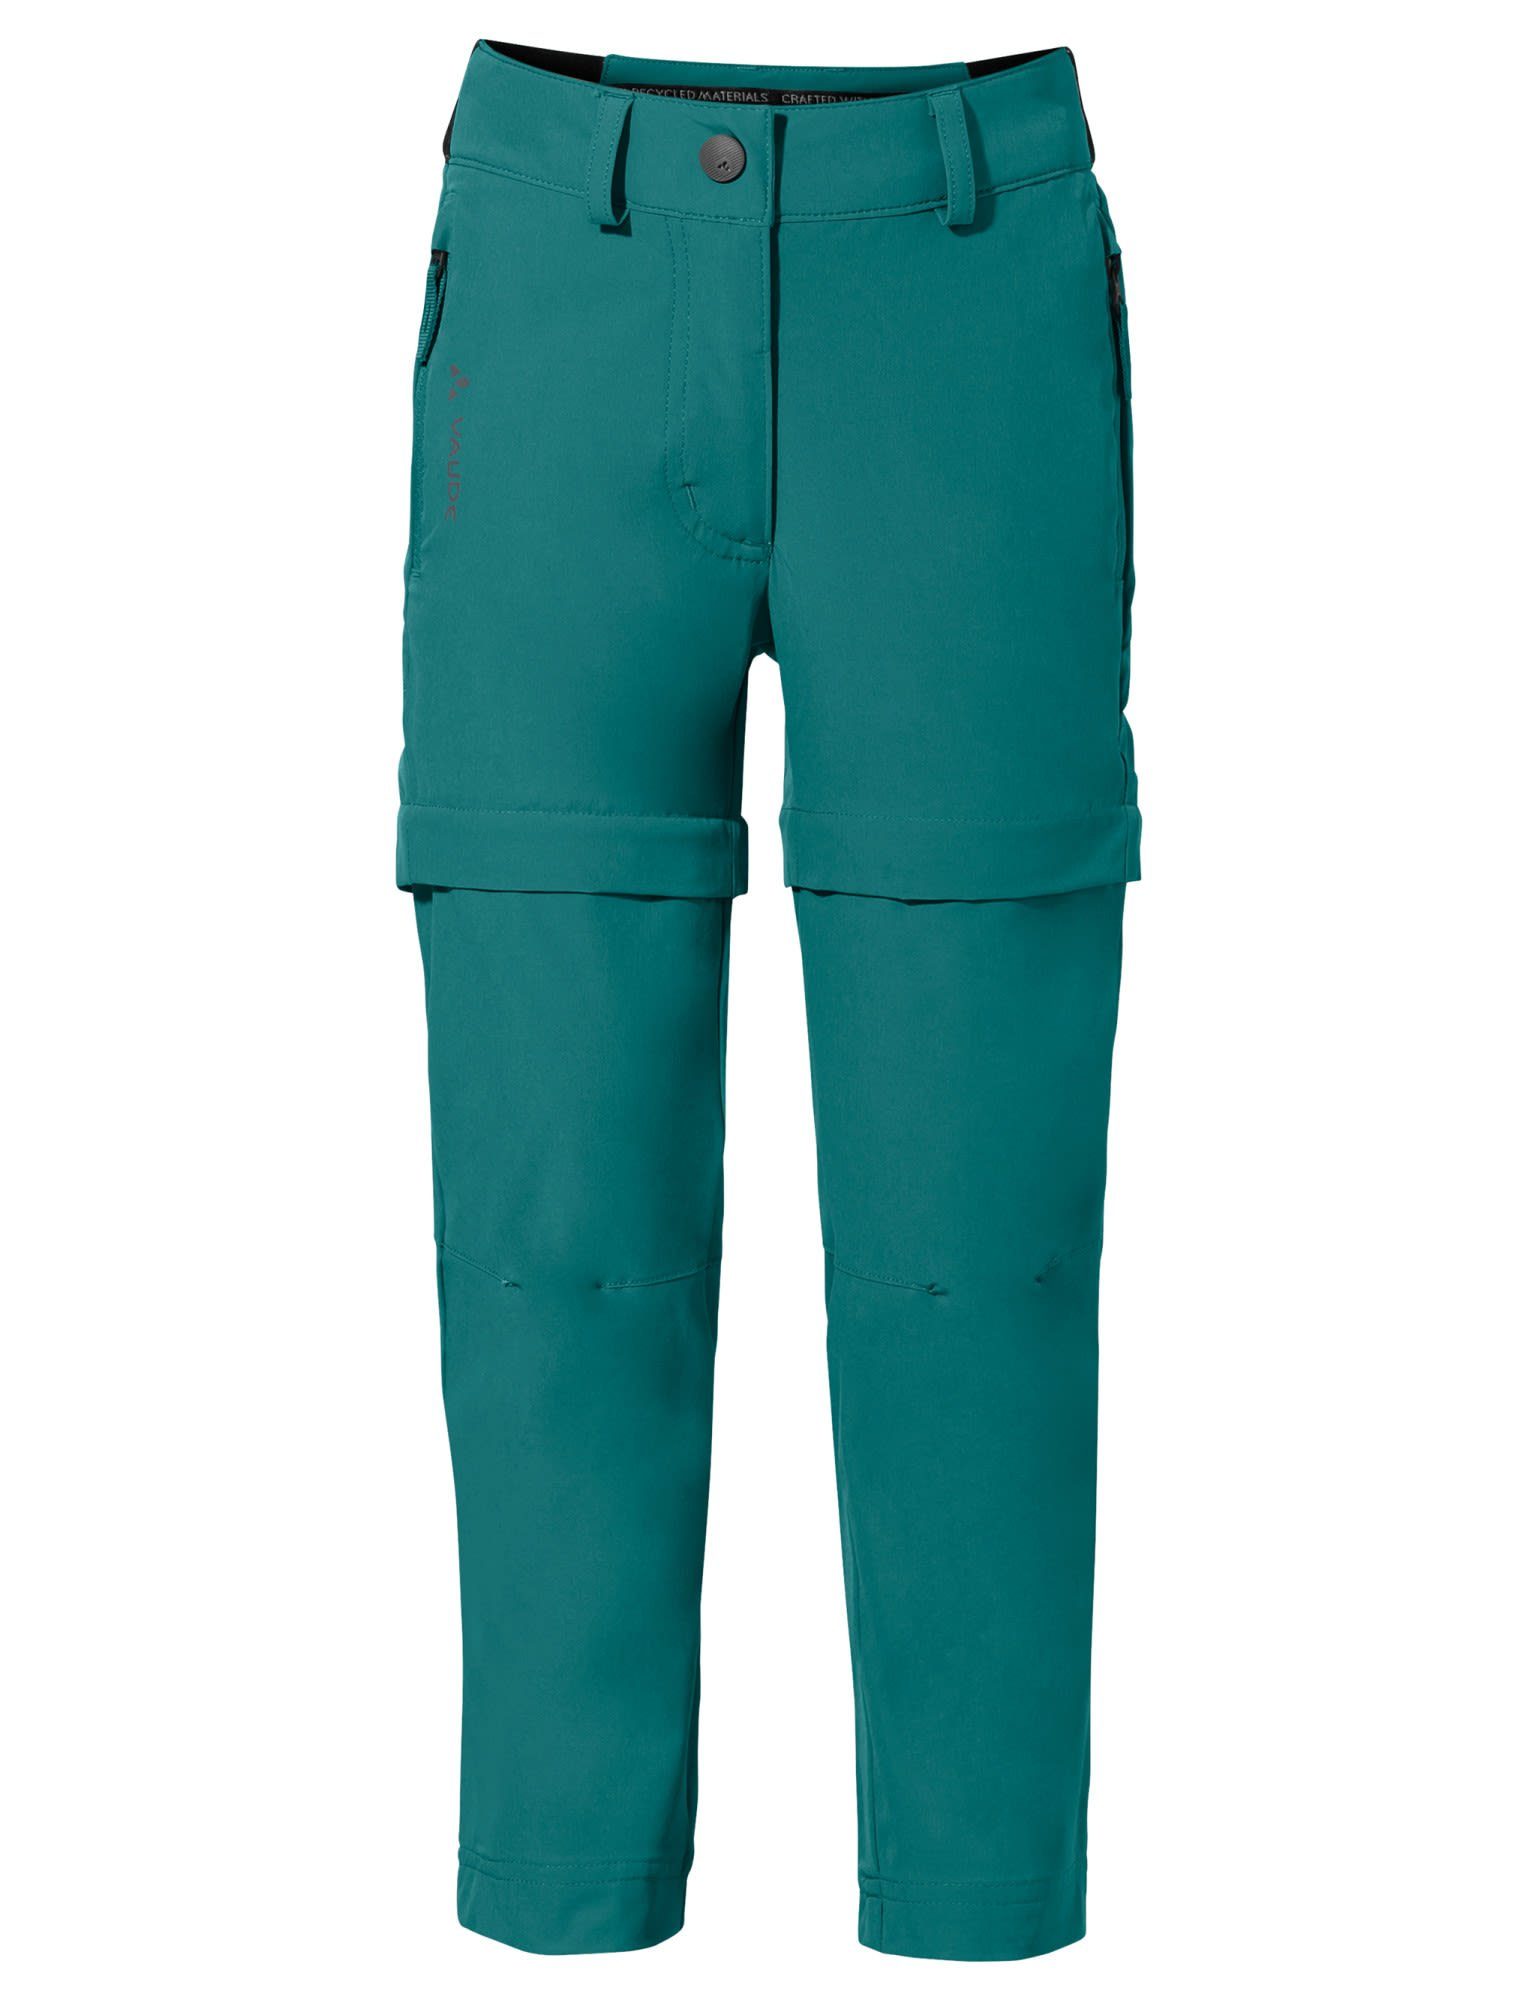 [Qualitätssicherung und kostenloser Versand] VAUDE Hose & Shorts Vaude Slim grün Pants Kids Kinder Zip-off Hose Fit